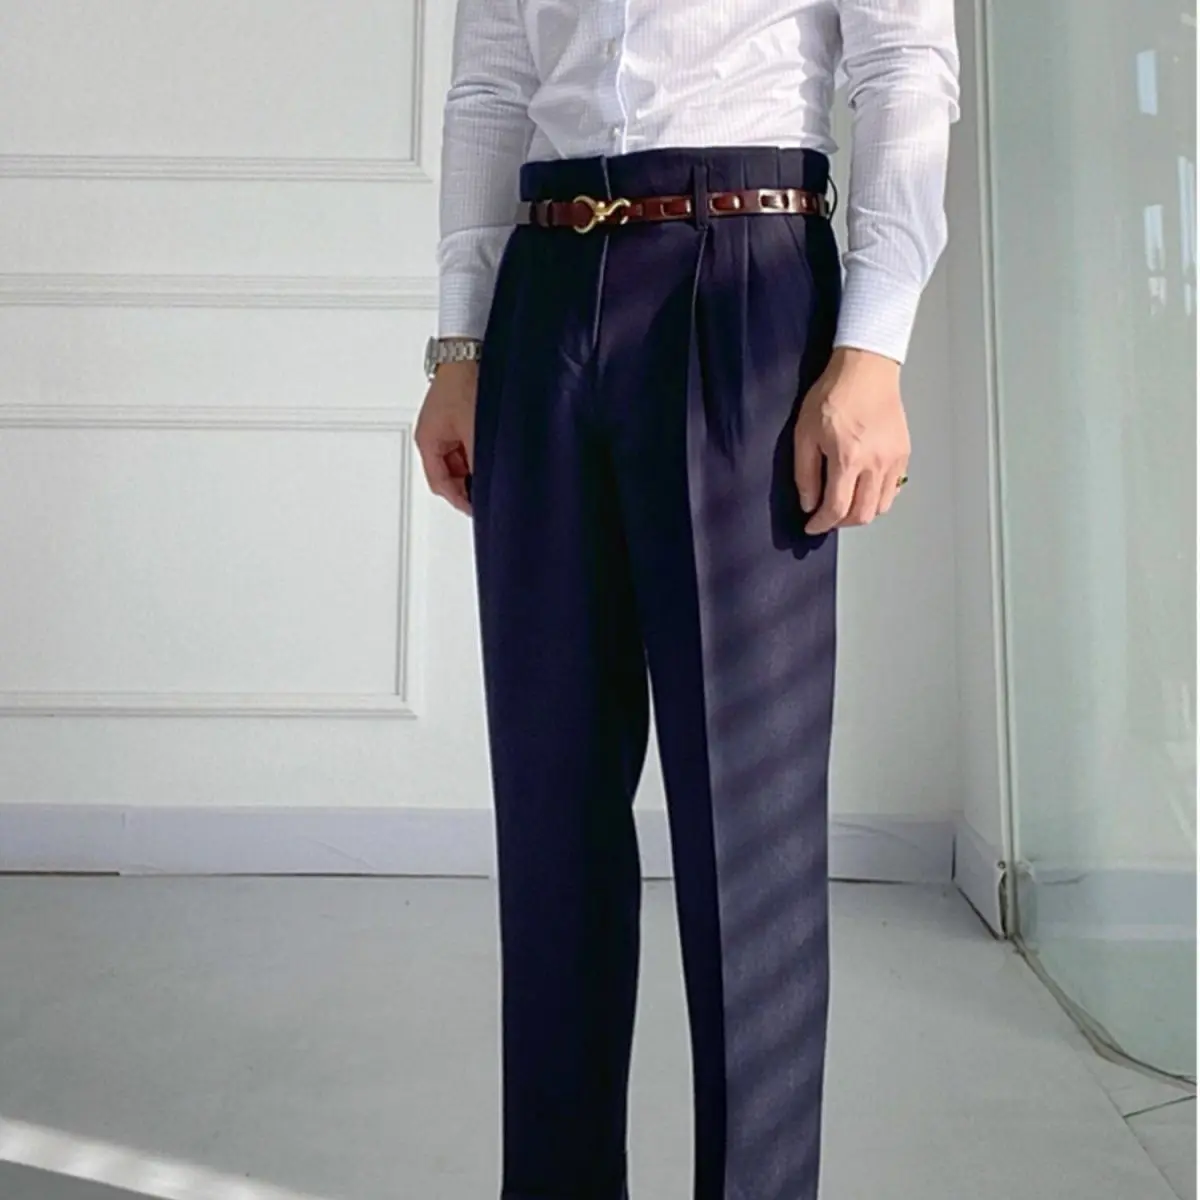 Yeni Tasarım Erkekler Yüksek Bel Pantolon Katı İngiltere Iş günlük giysi Pantolon Moda Streç Pantolon Erkek Marka Giyim C78